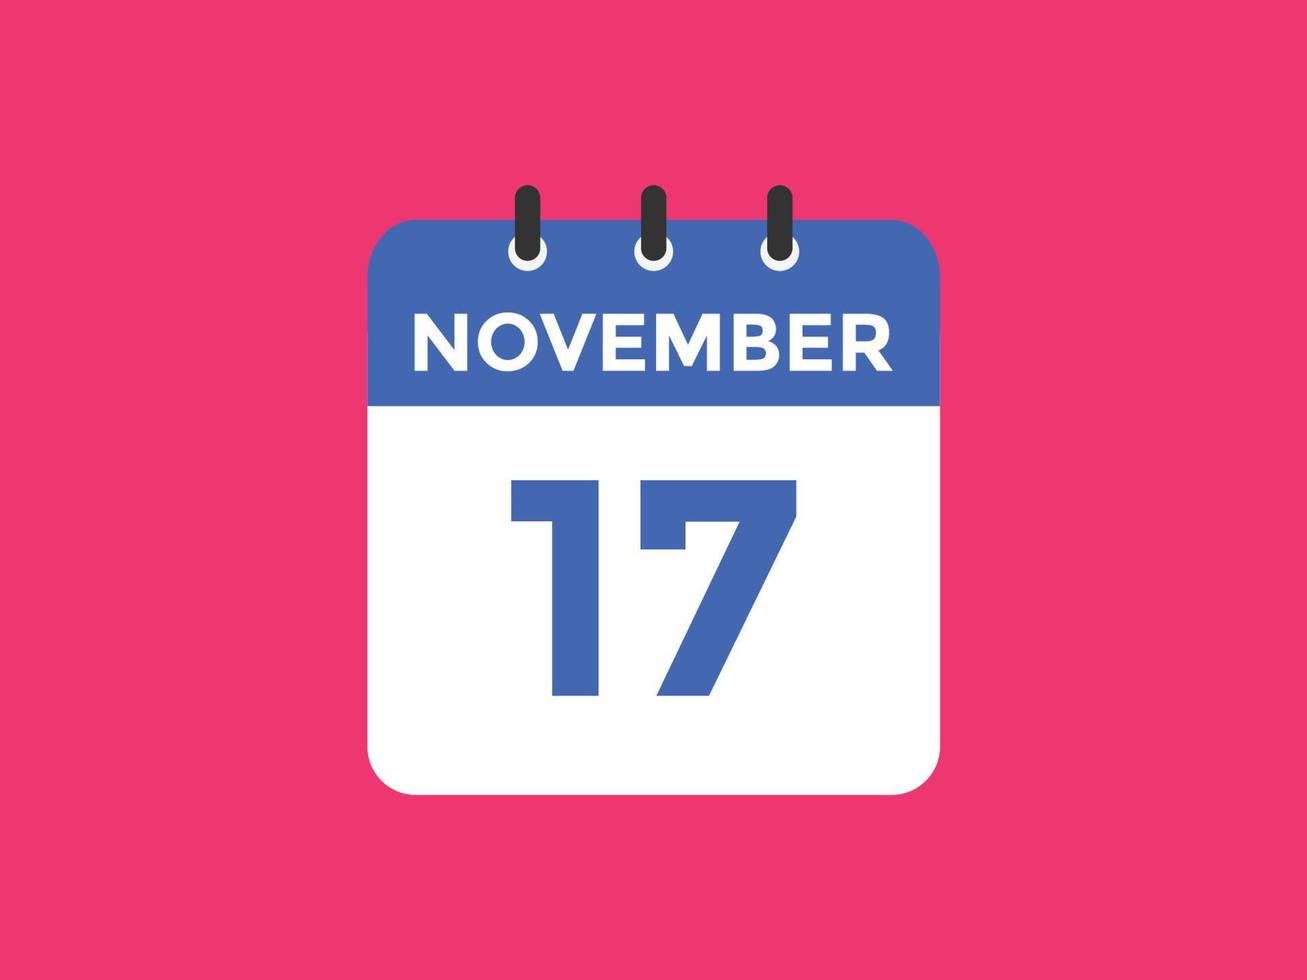 novembre 17 calendario promemoria. 17 ° novembre quotidiano calendario icona modello. calendario 17 ° novembre icona design modello. vettore illustrazione